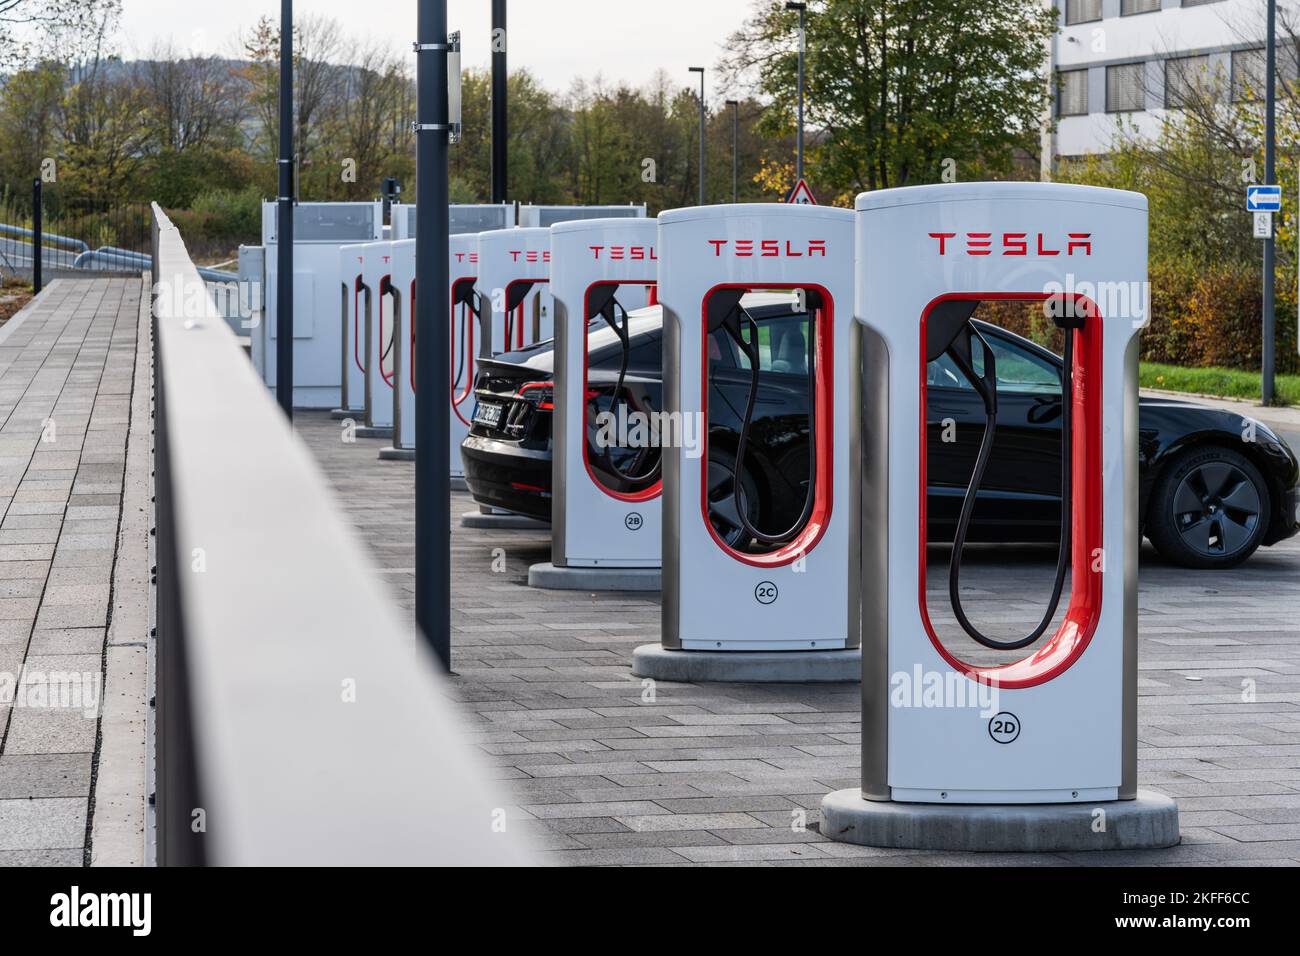 Une rangée de superchargeurs Tesla avec une voiture Tesla noire en charge à Wetzlar, en Allemagne Banque D'Images